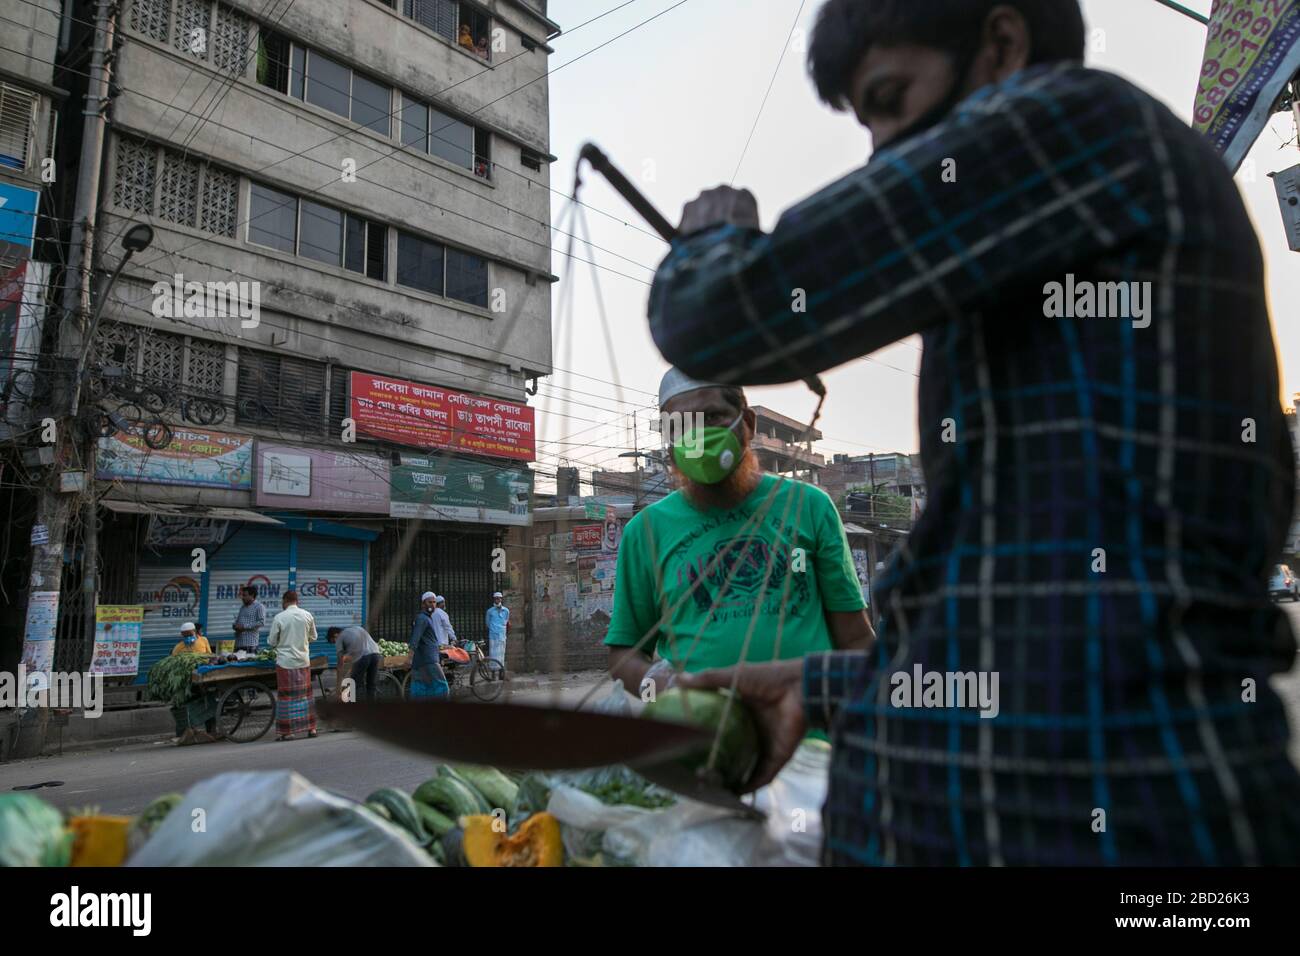 DHAKA, BANGLADESH - APRILE 06: Un falco vende verdure sulla strada durante l'embosaggio imposto dal governo come misura preventiva contro il coron COVID-19 Foto Stock